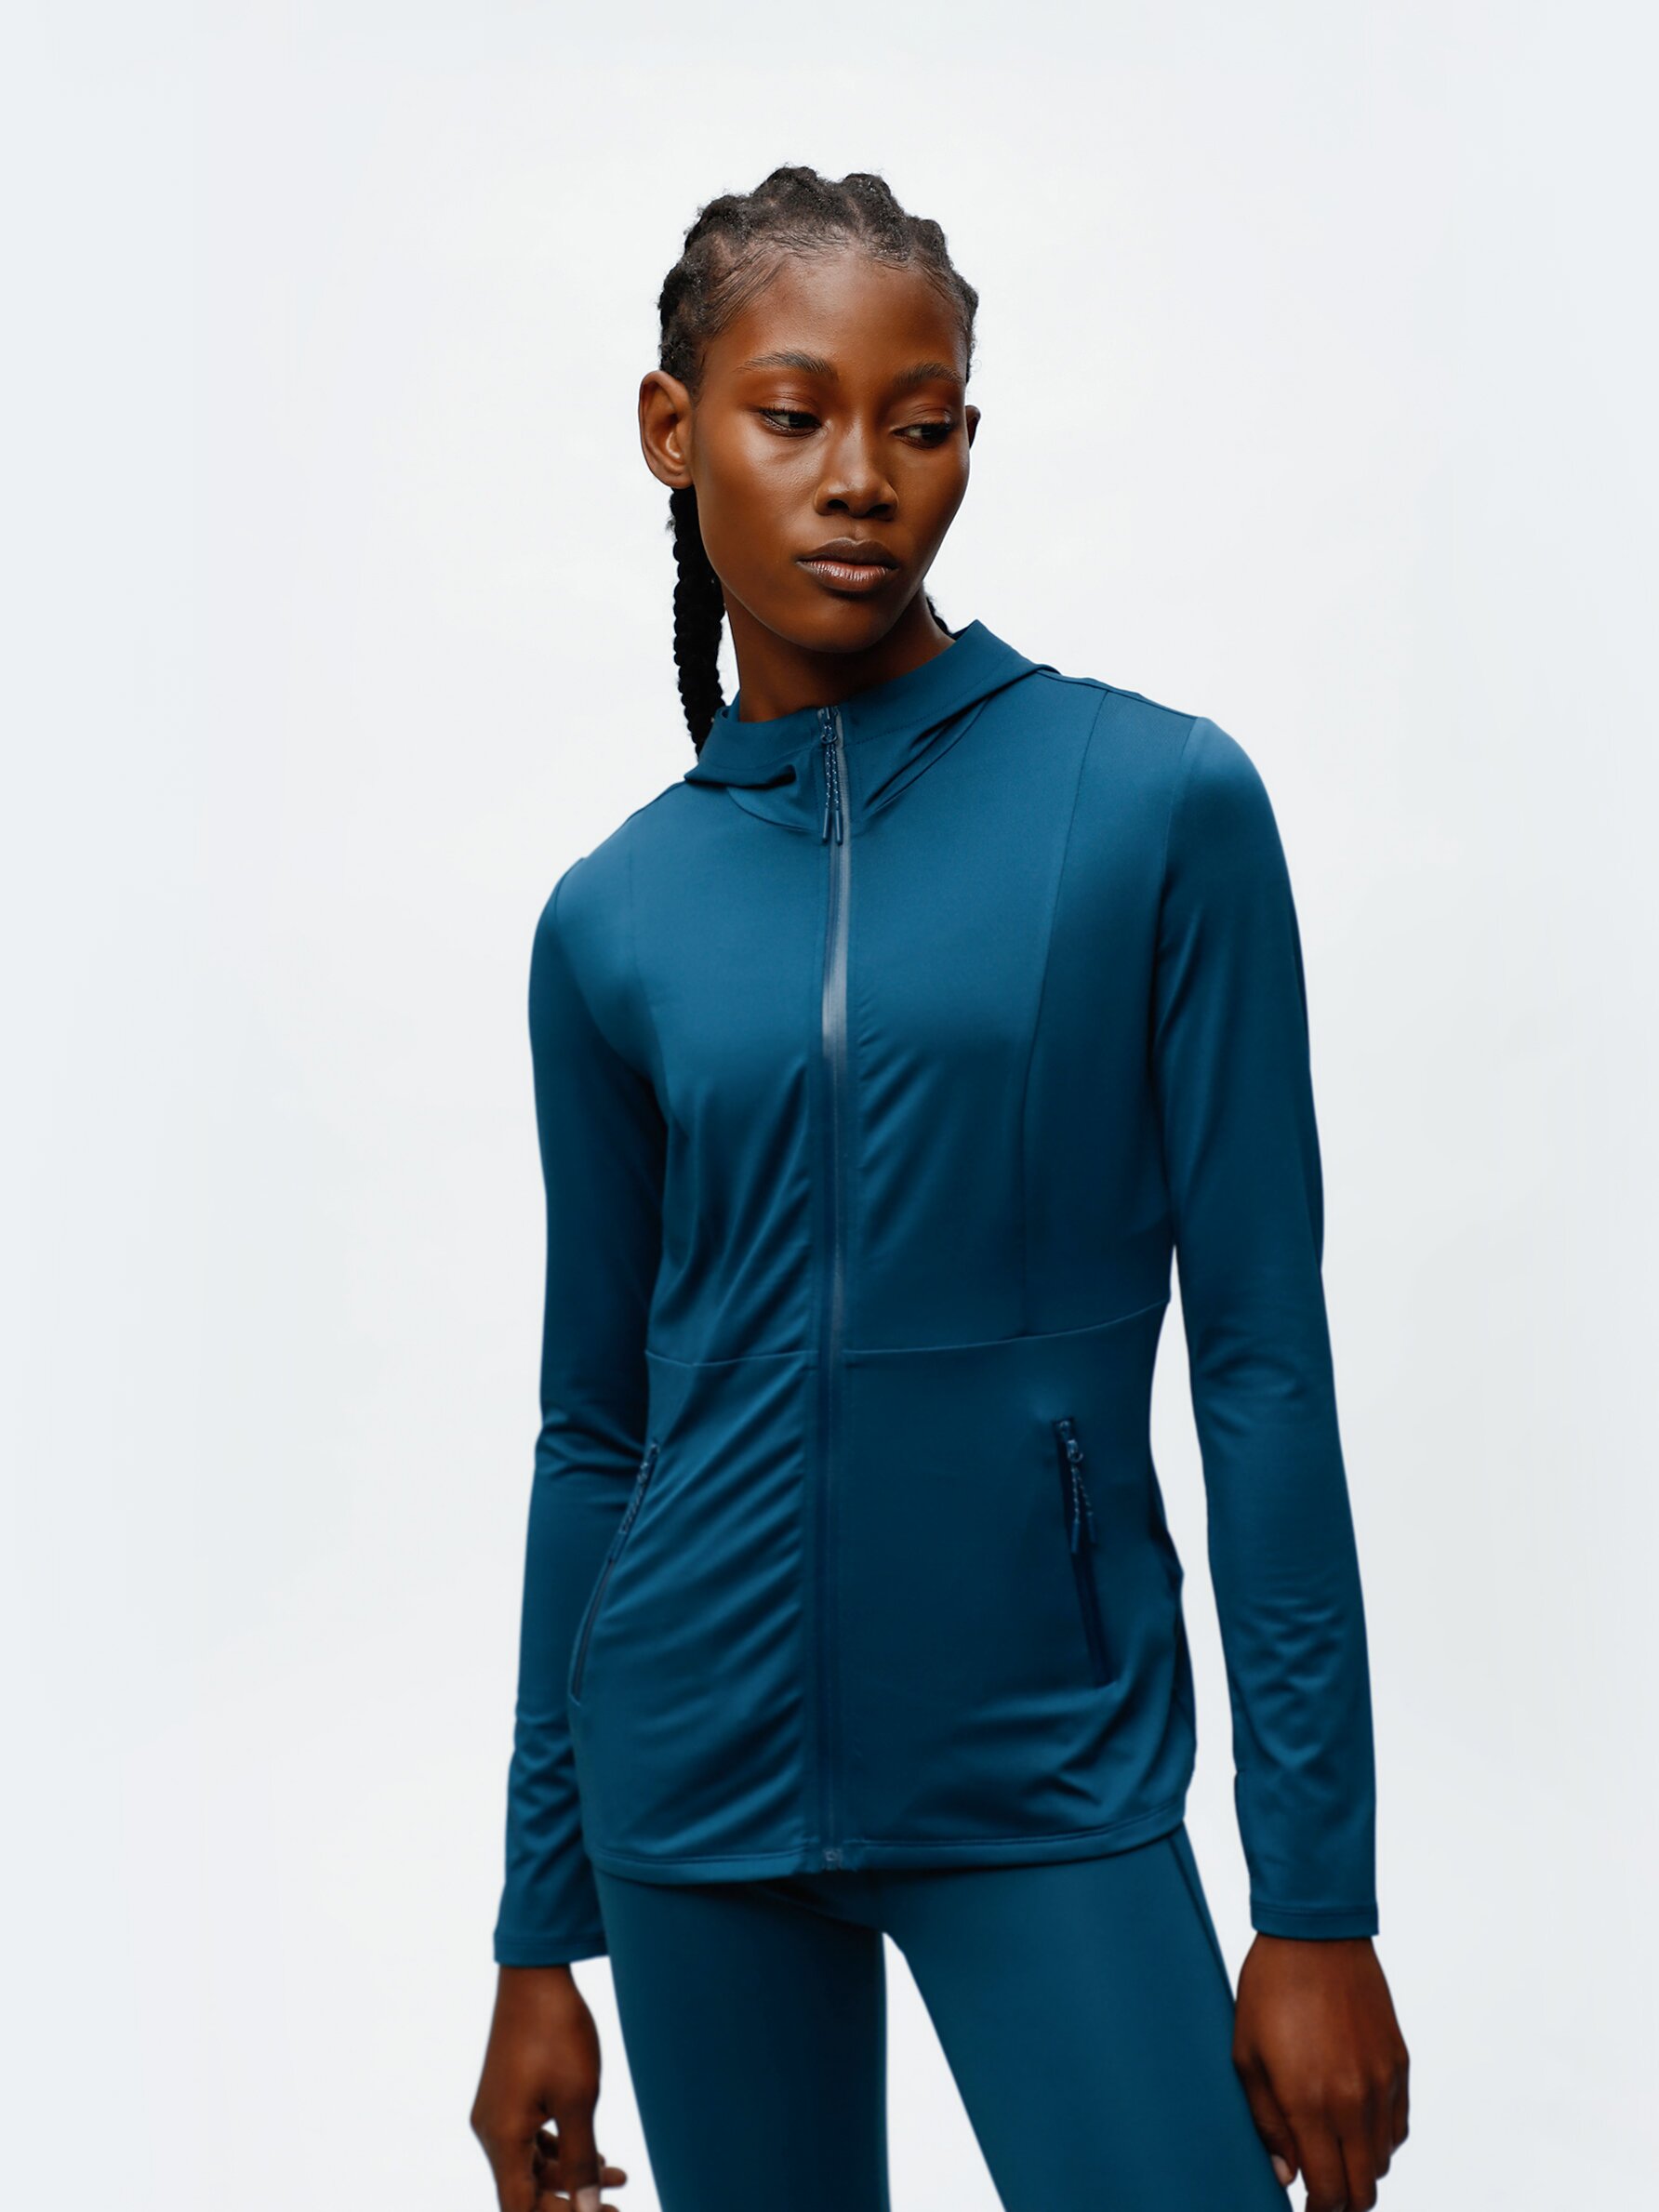 Hooded sports jacket - Jackets - Sportswear - CLOTHING - Woman 